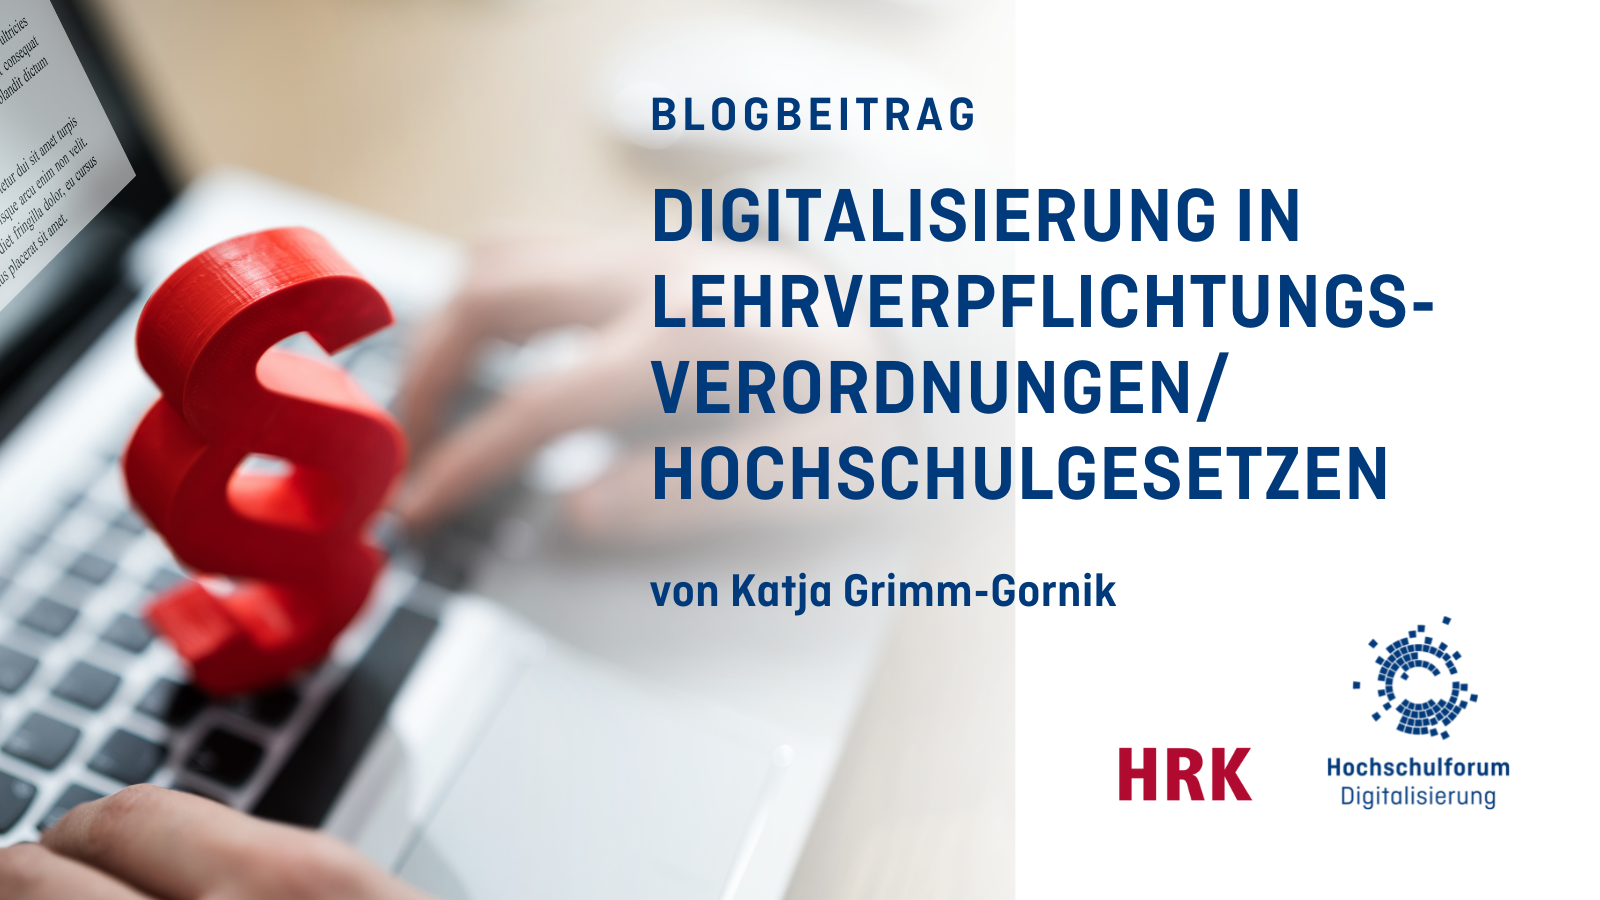 Titelbild zum Blobeitrag: Digitalisierung in Lehrverpflichtungsverordnungen/Hochschulgesetzen - von Katja Grimm Gornik. Logo: HRK und Hochschulforum Digitalisierung